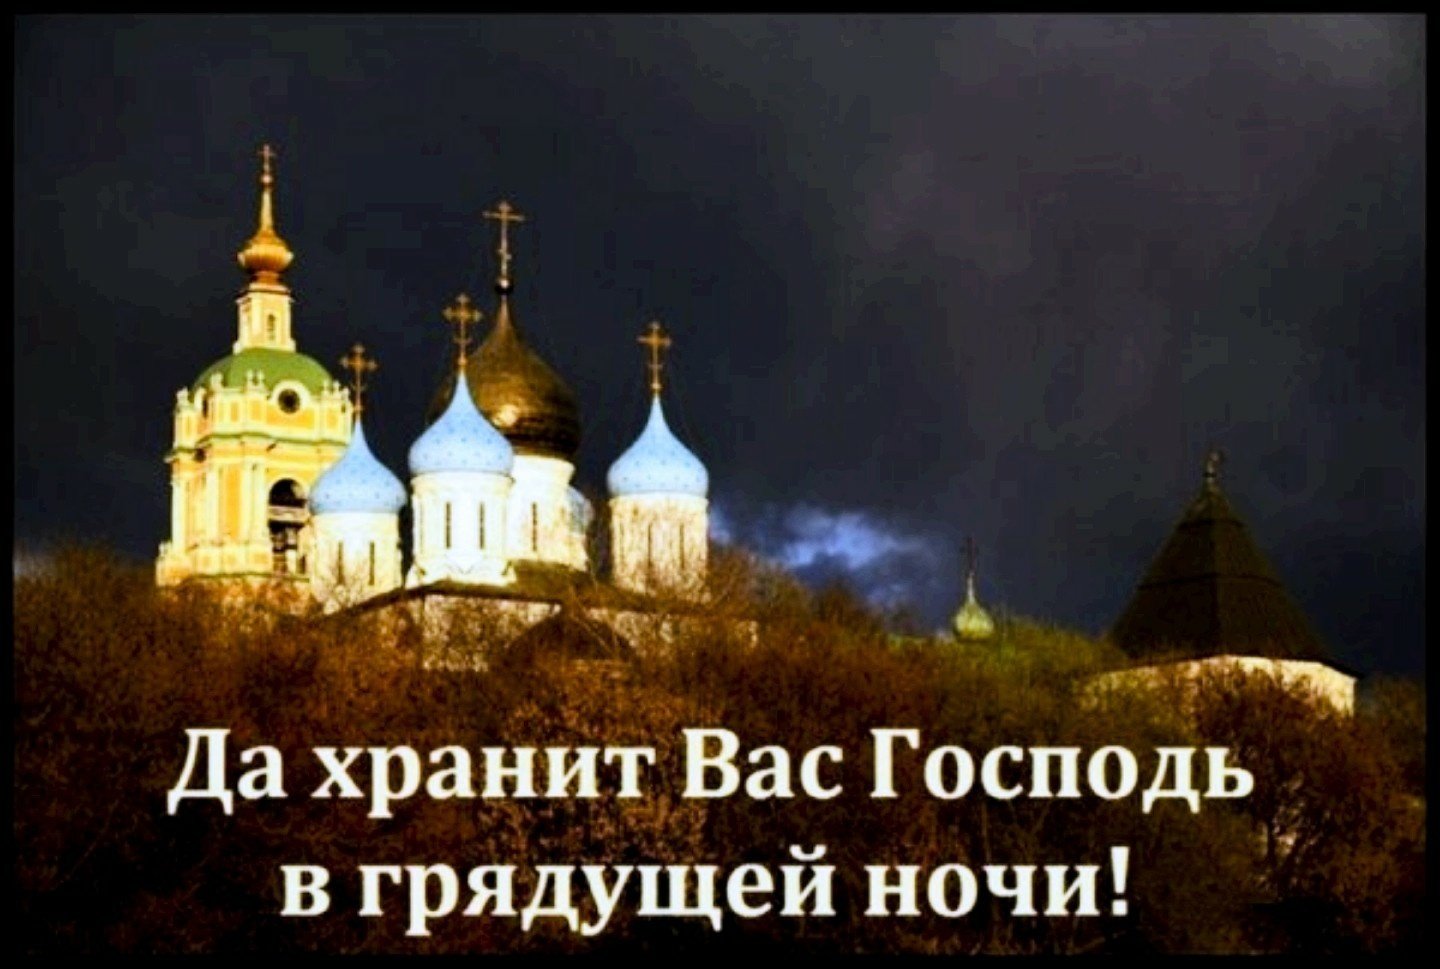 Спокойно господа. Православные пожелания спокойной ночи. Доброй ночи православные. Доброй ночи храни вас Господь. Доброй ночи храни вас го.